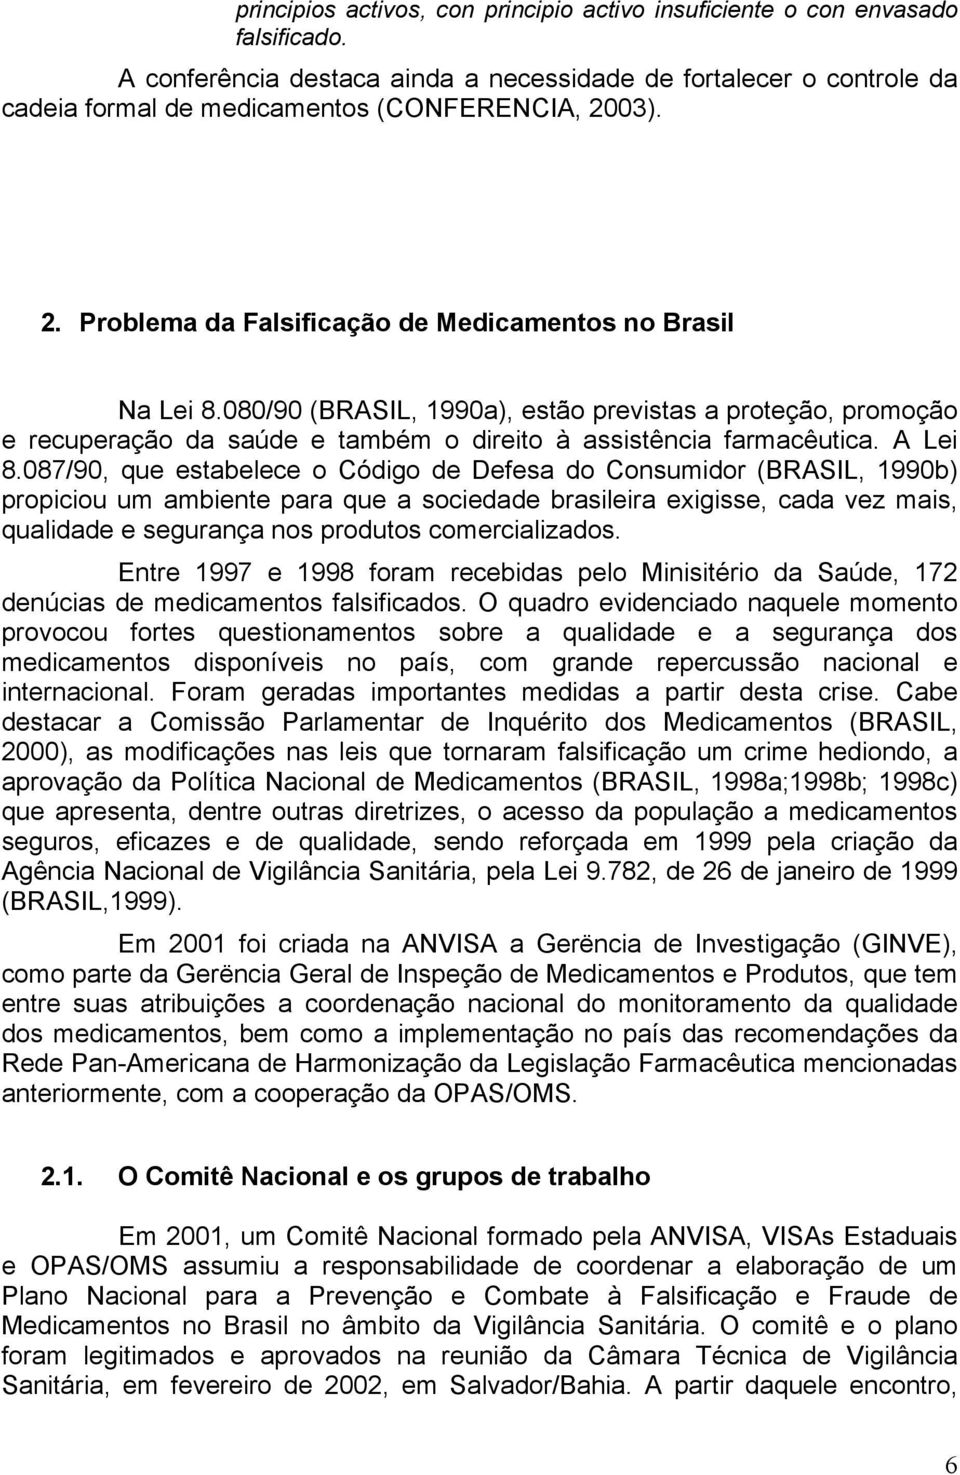 080/90 (BRASIL, 1990a), estão previstas a proteção, promoção e recuperação da saúde e também o direito à assistência farmacêutica. A Lei 8.